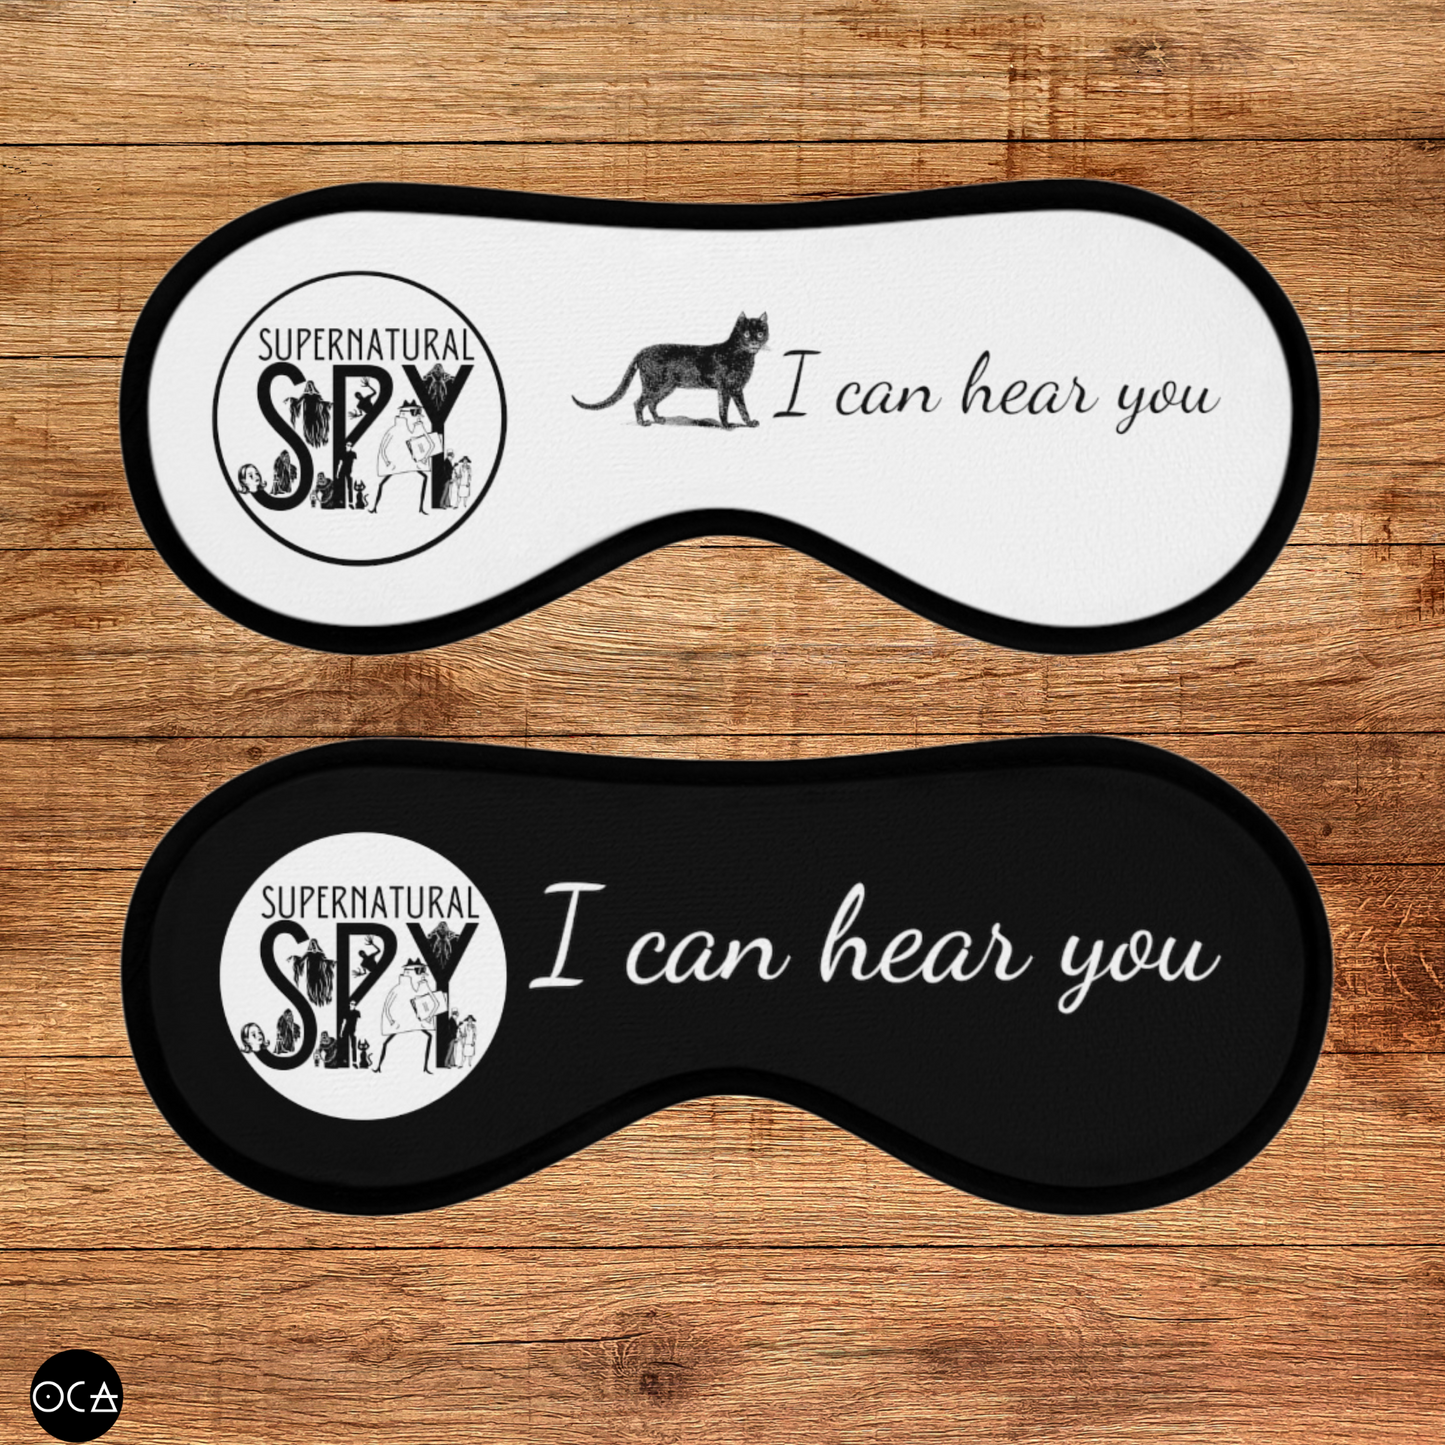 Supernatural Spy Sprit Box Blind Mask (2 colors/2 designs)